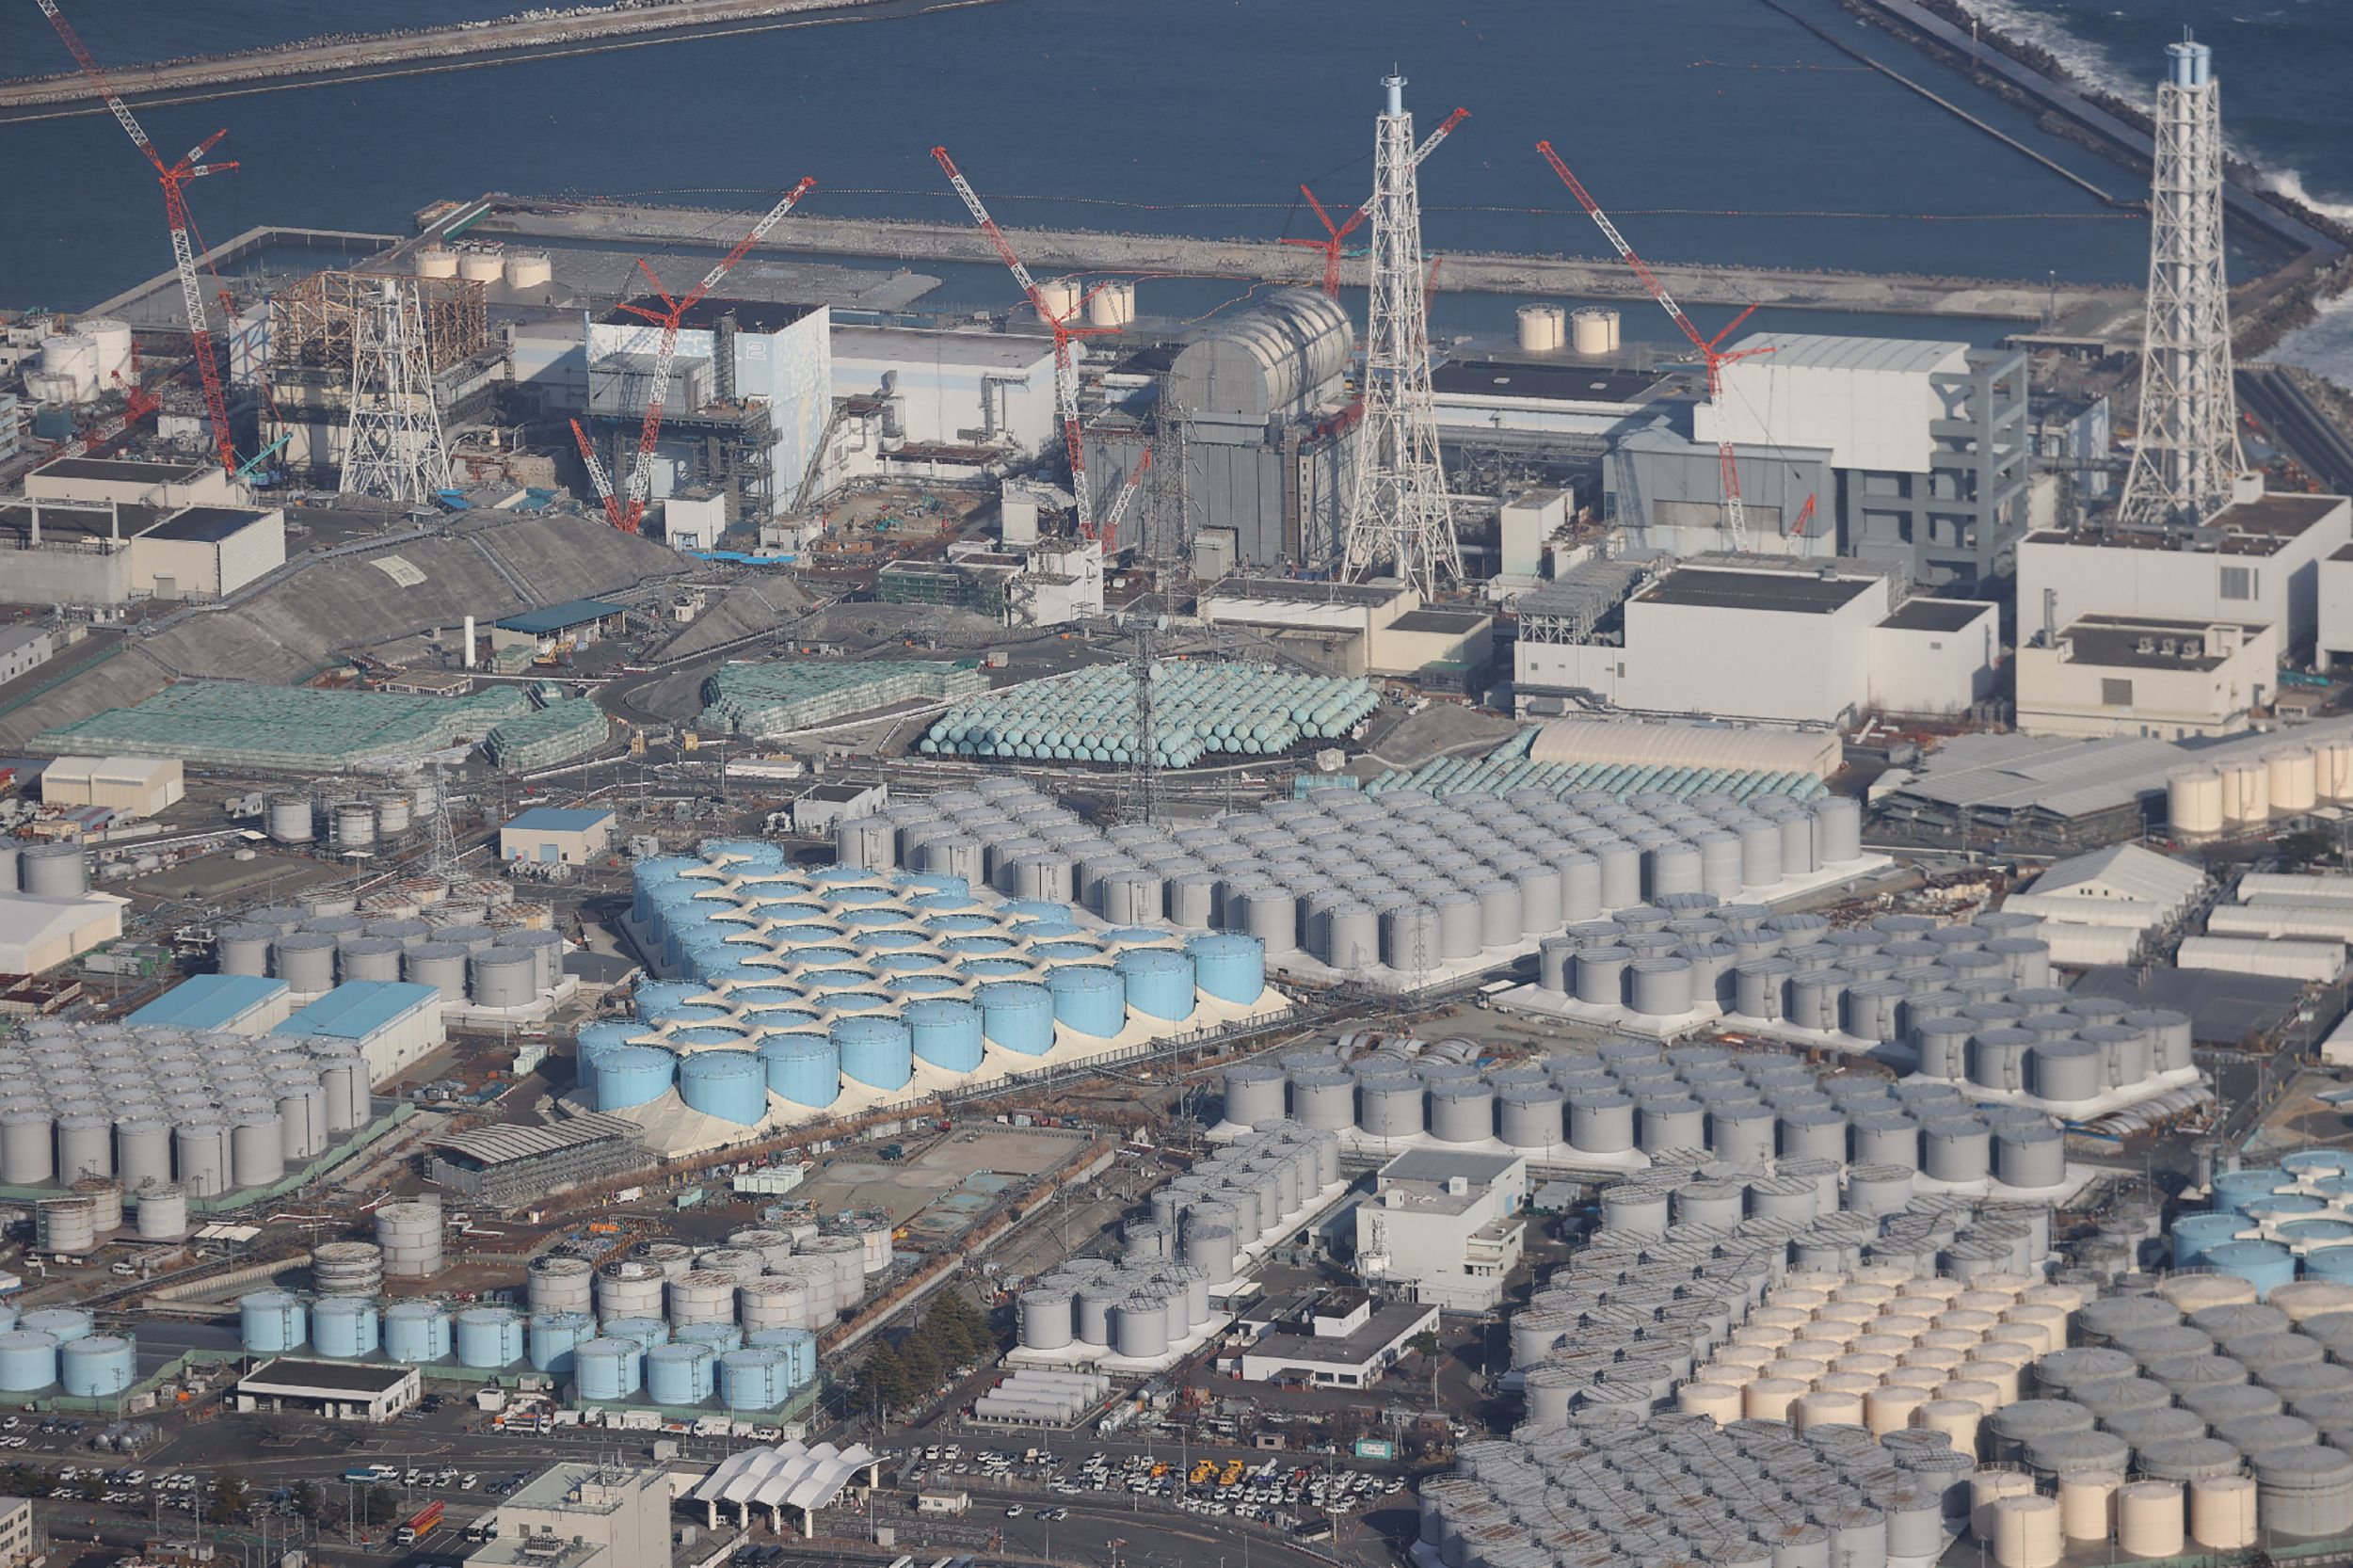 Fukushima Daiichi Nuclear Power Plant undergoing decommissioning